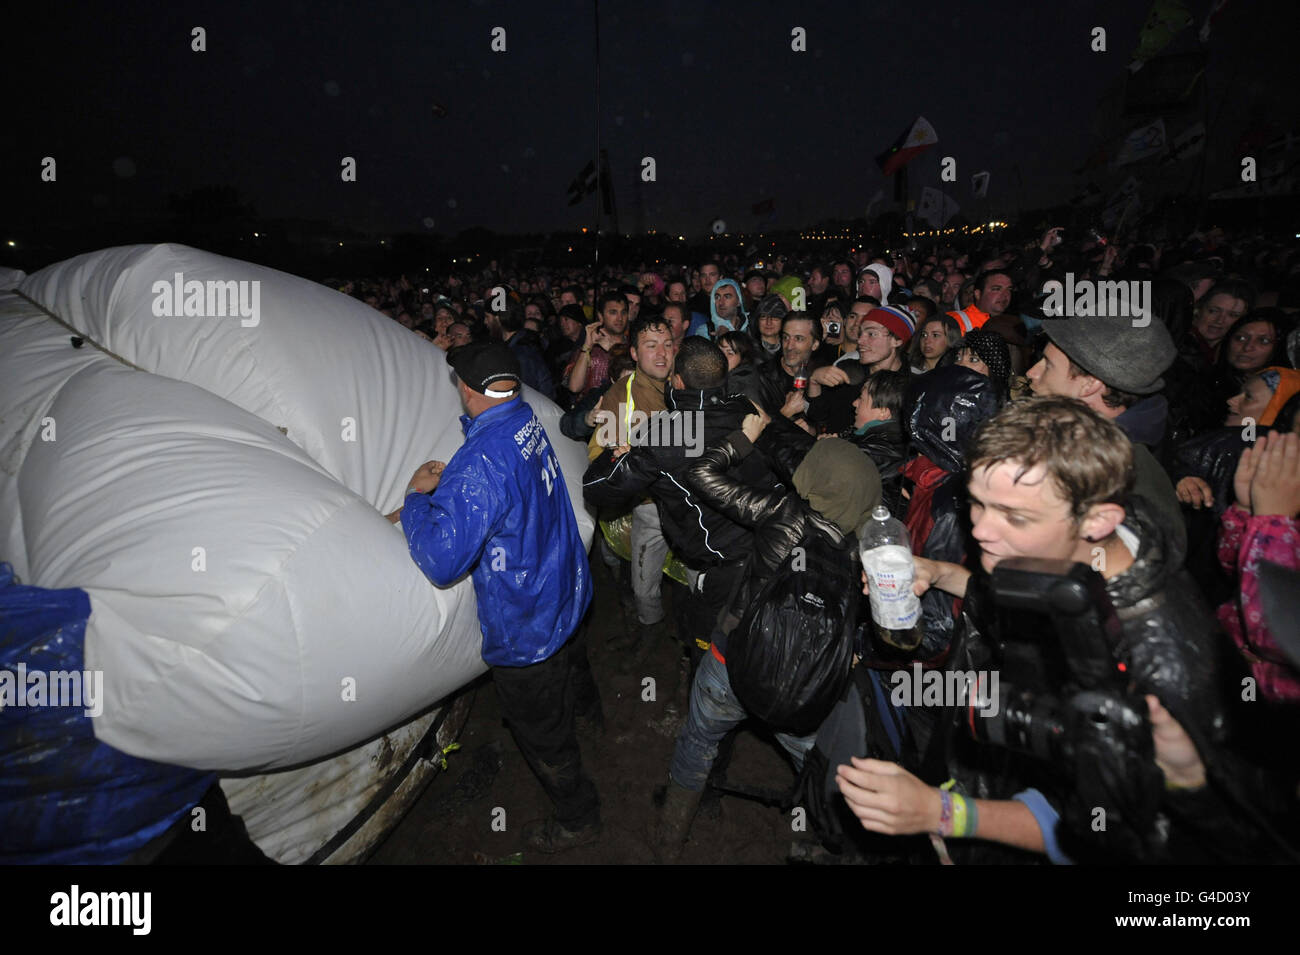 Sicherheitspersonal und Mitglieder der direkten Aktionsgruppe Art Uncut, tossle über einen 20 Fuß großen Ballon mit der Botschaft "U Pay Your Tax 2", während die Rockband U2 auf der Pyramid Stage beim Glastonbury Musikfestival in Worthy Farm, Pilton auftreten. Stockfoto